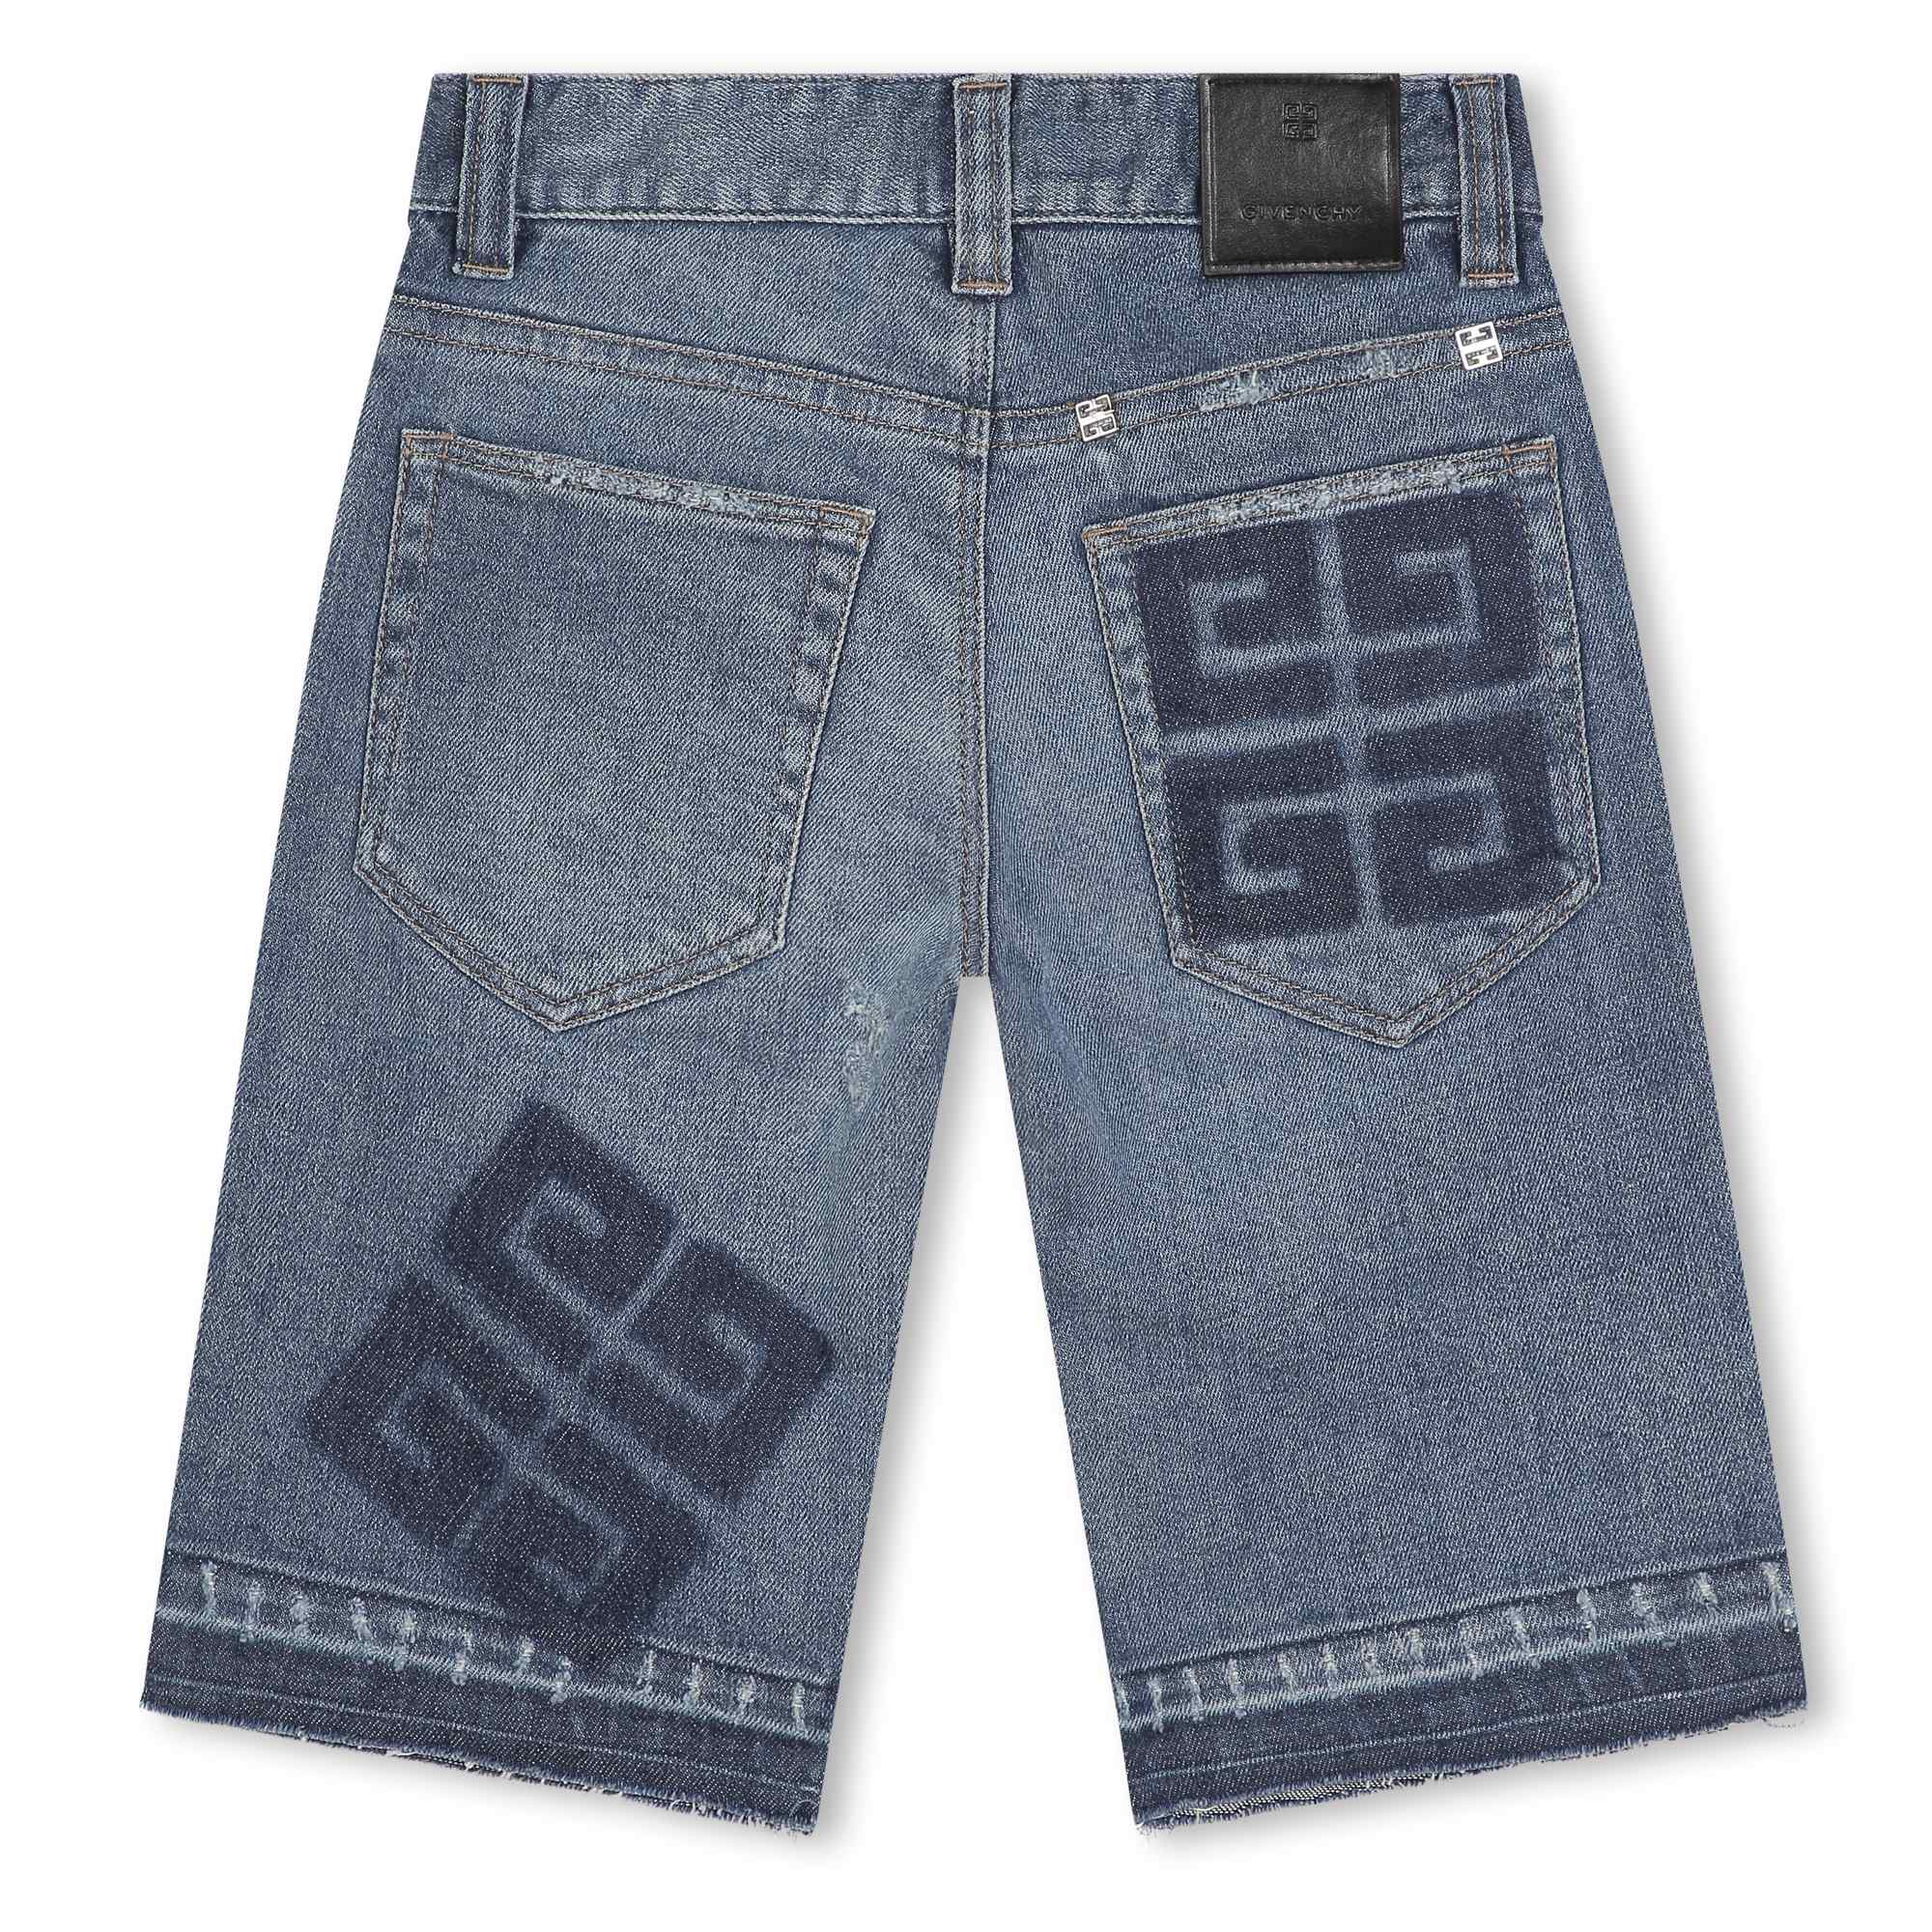 Verstellbare Jeans-Bermudas GIVENCHY Für JUNGE